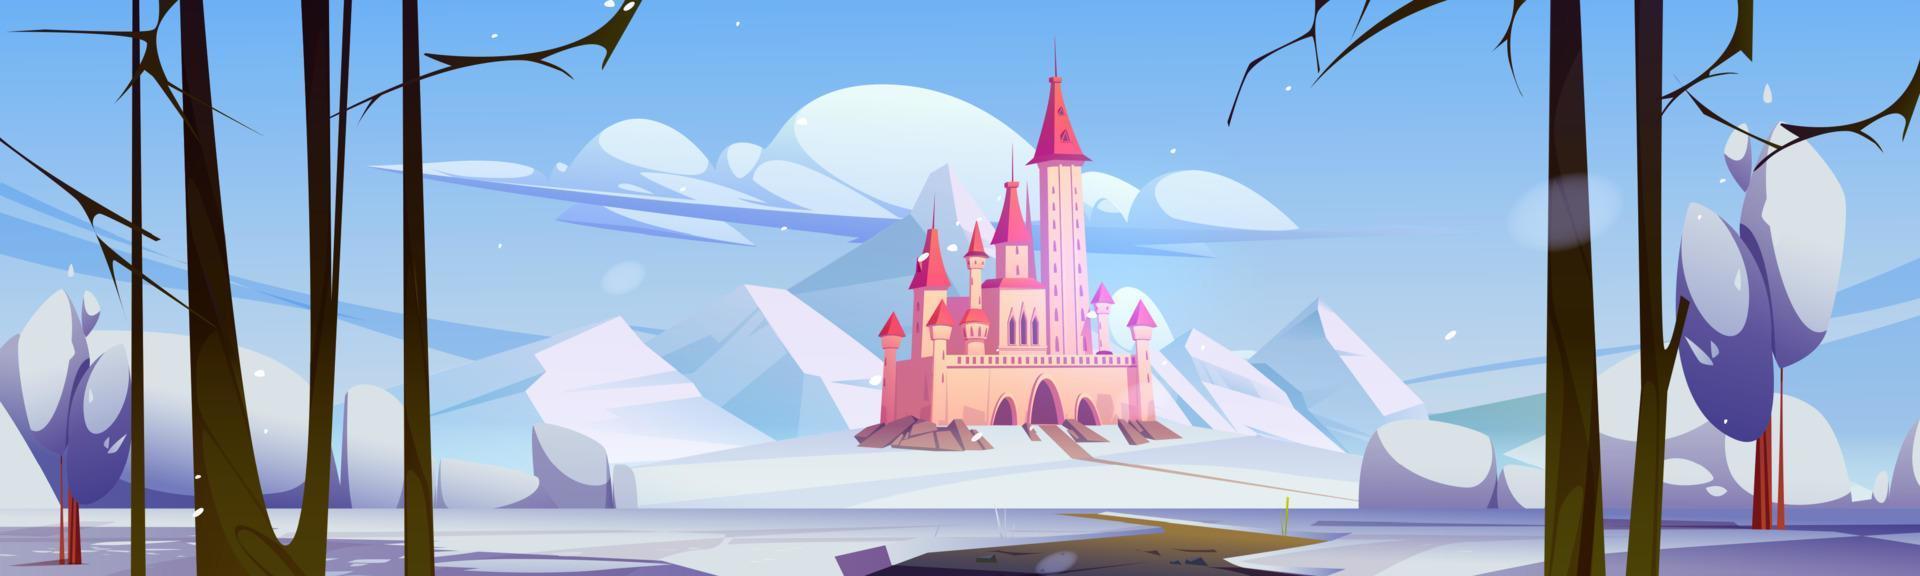 paysage d'hiver avec château, montagne, neige blanche vecteur